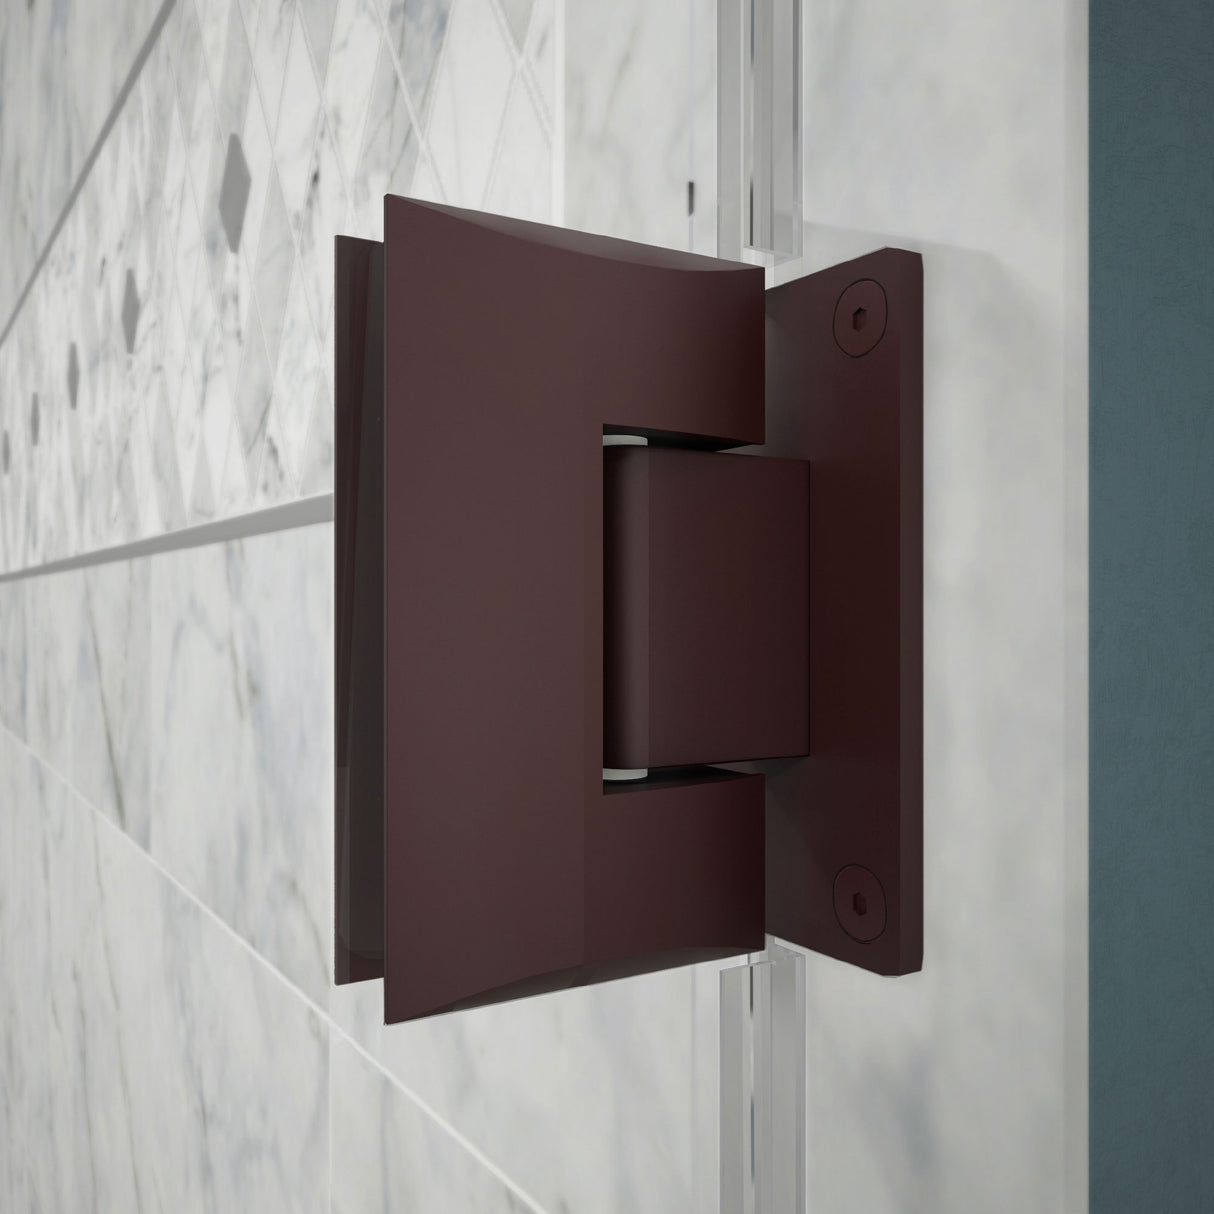 DreamLine Unidoor Plus 66-66 1/2 in. W x 72 in. H Frameless Hinged Shower Door with 34 in. Half Panel in Oil Rubbed Bronze